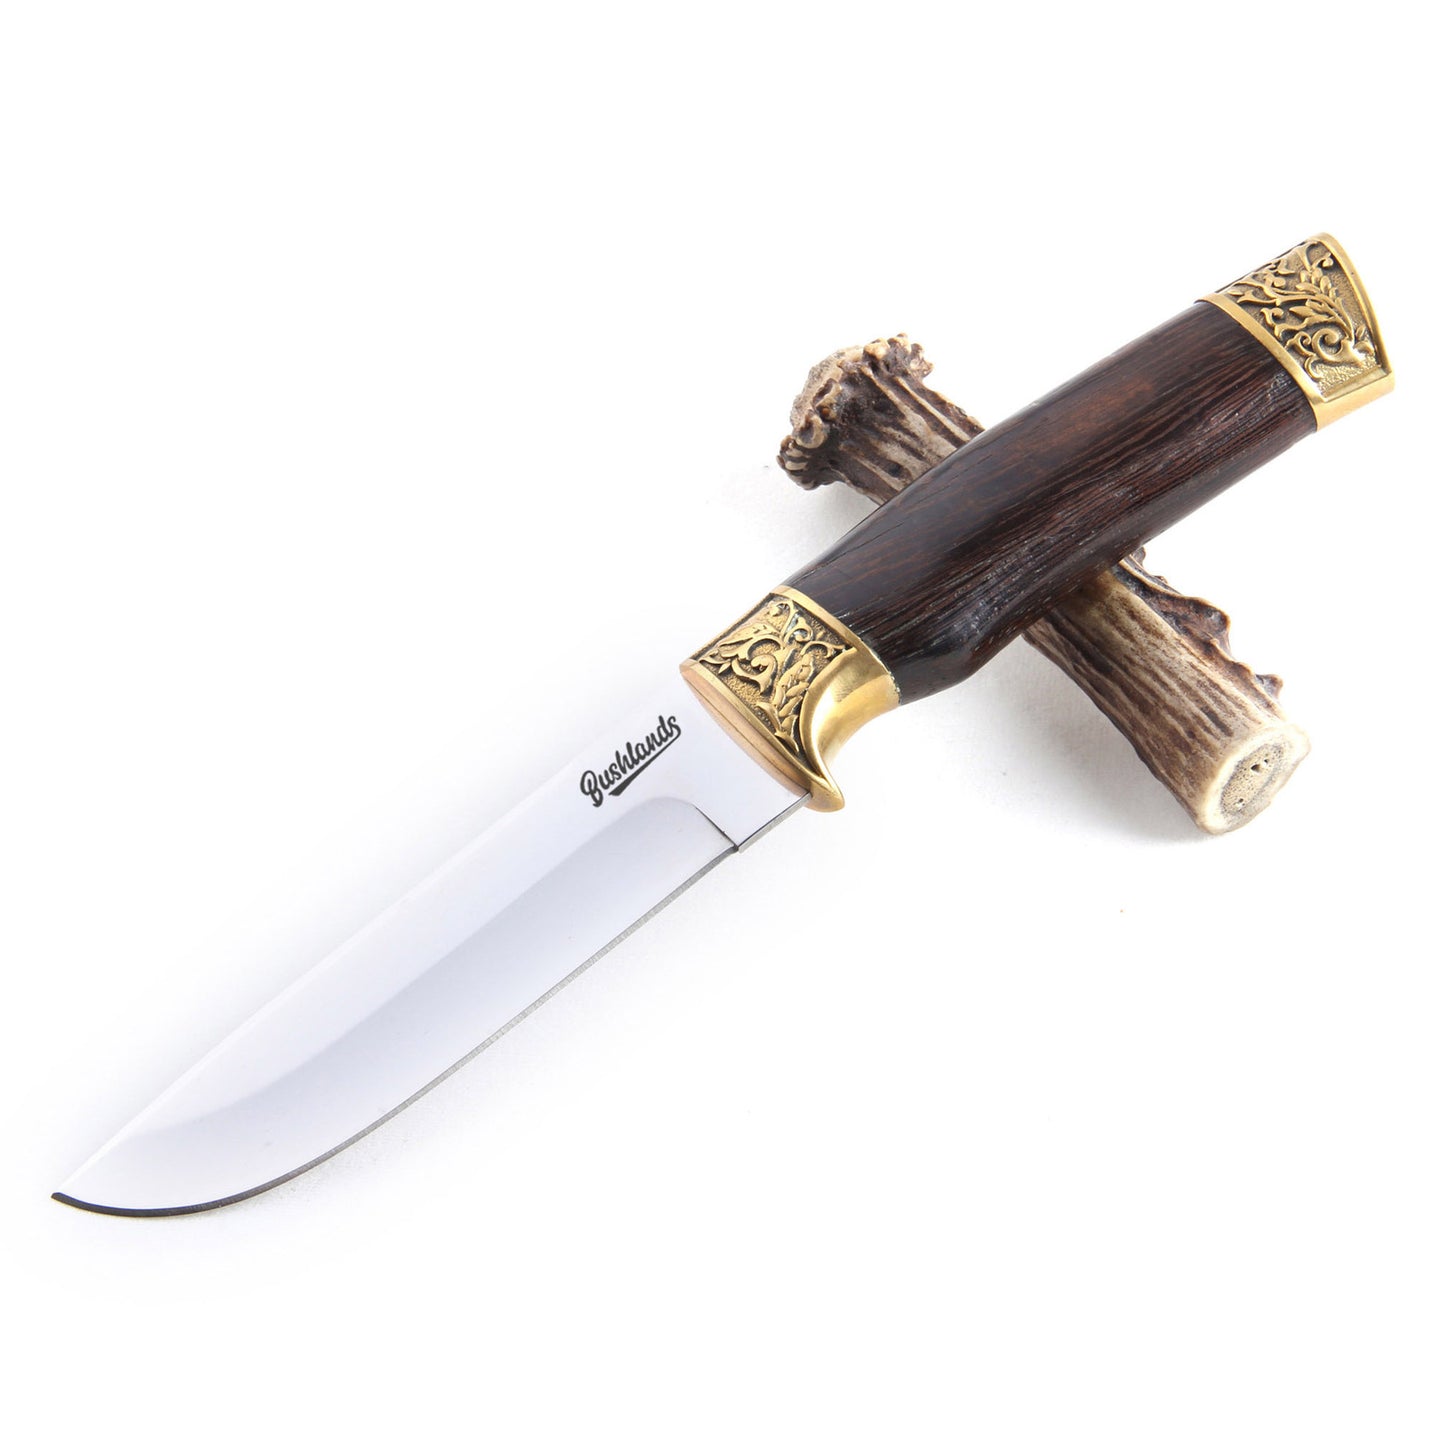 Bushlands Bushlands Fixed Blade Hunting Knife - 5 Inch Blade Wenge Handle #290 Lavender